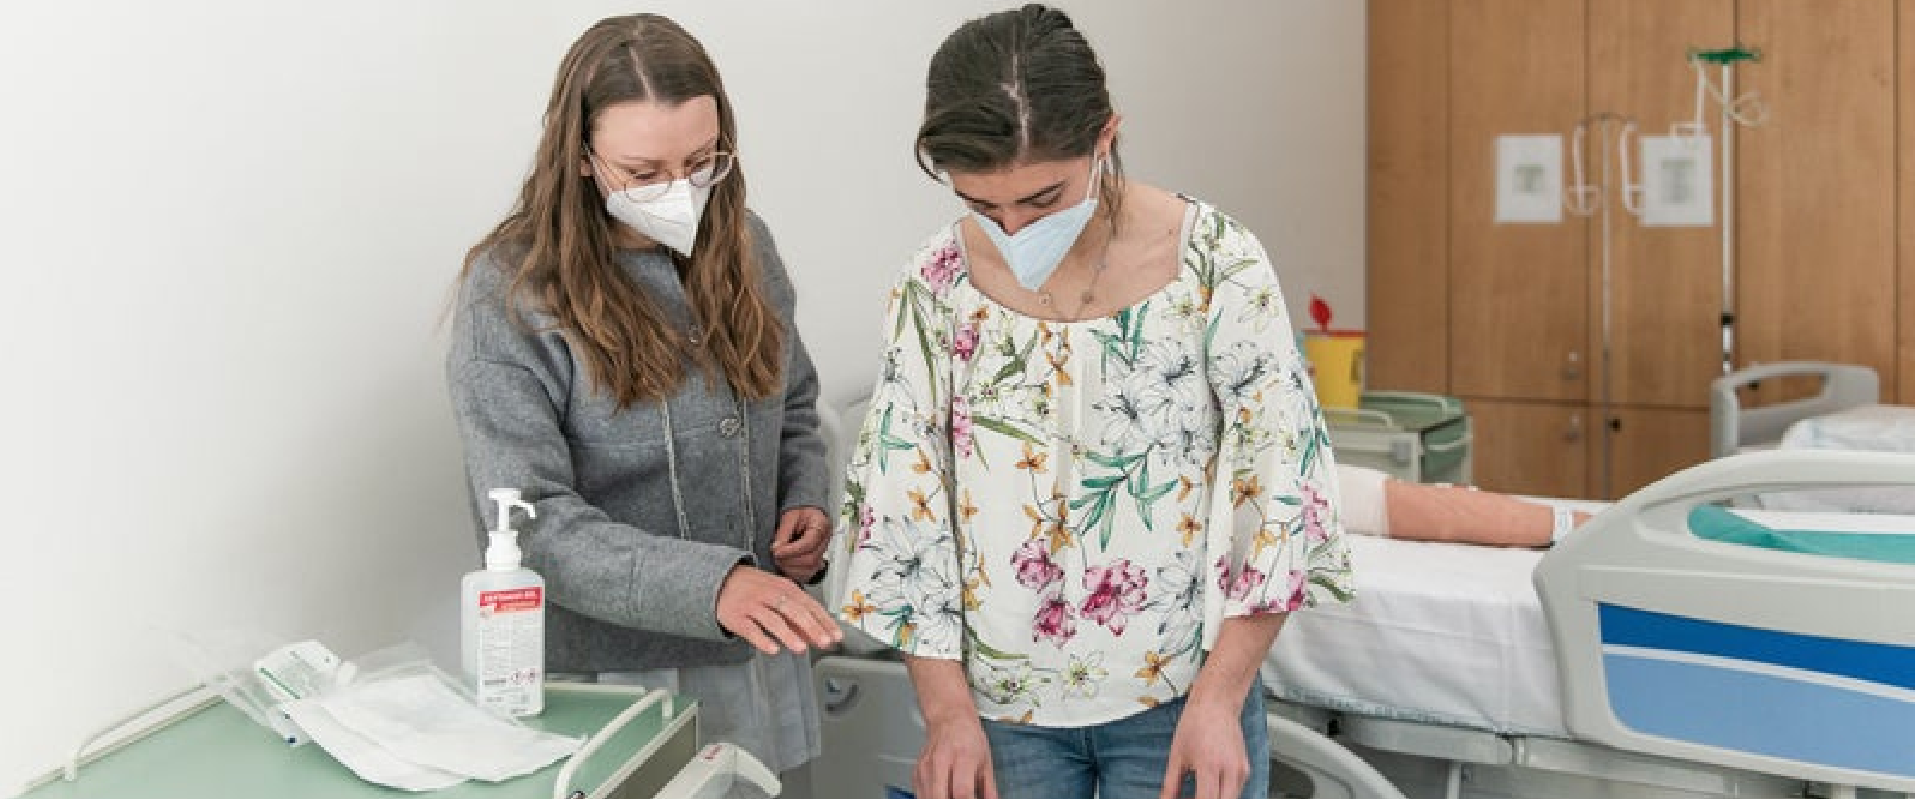 Praktische Fächer sind ein wichtiger Teil der Ausbildung in Krankenpflege an der Claudiana - ab Herbst 2022 startet das Pilotprojekt einer Außenstelle in Bruneck.